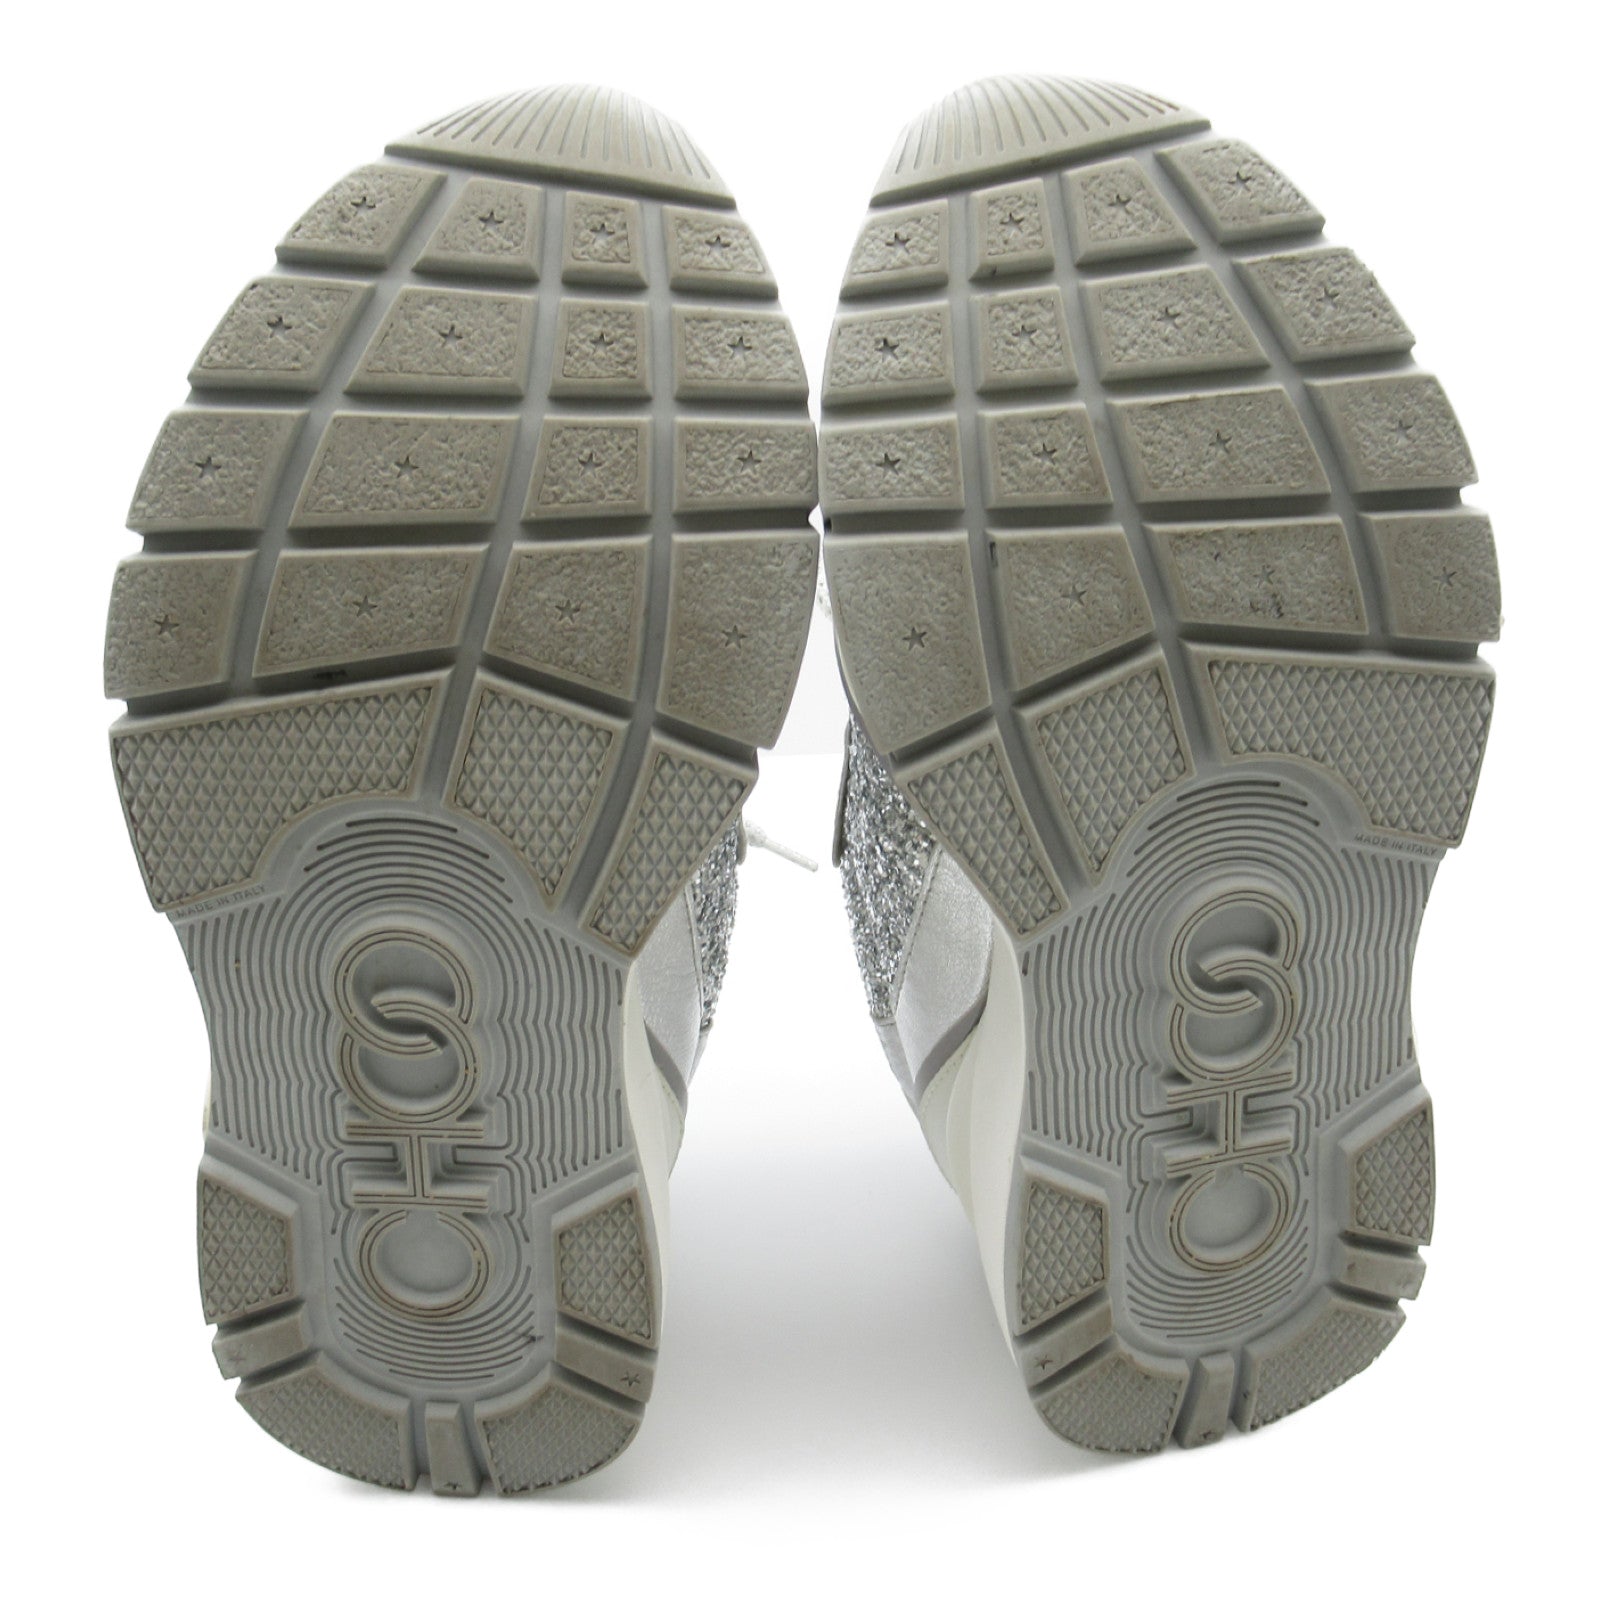 JIMMY CHOO Sneaker Shoes  Leather Women&#39;s Silver